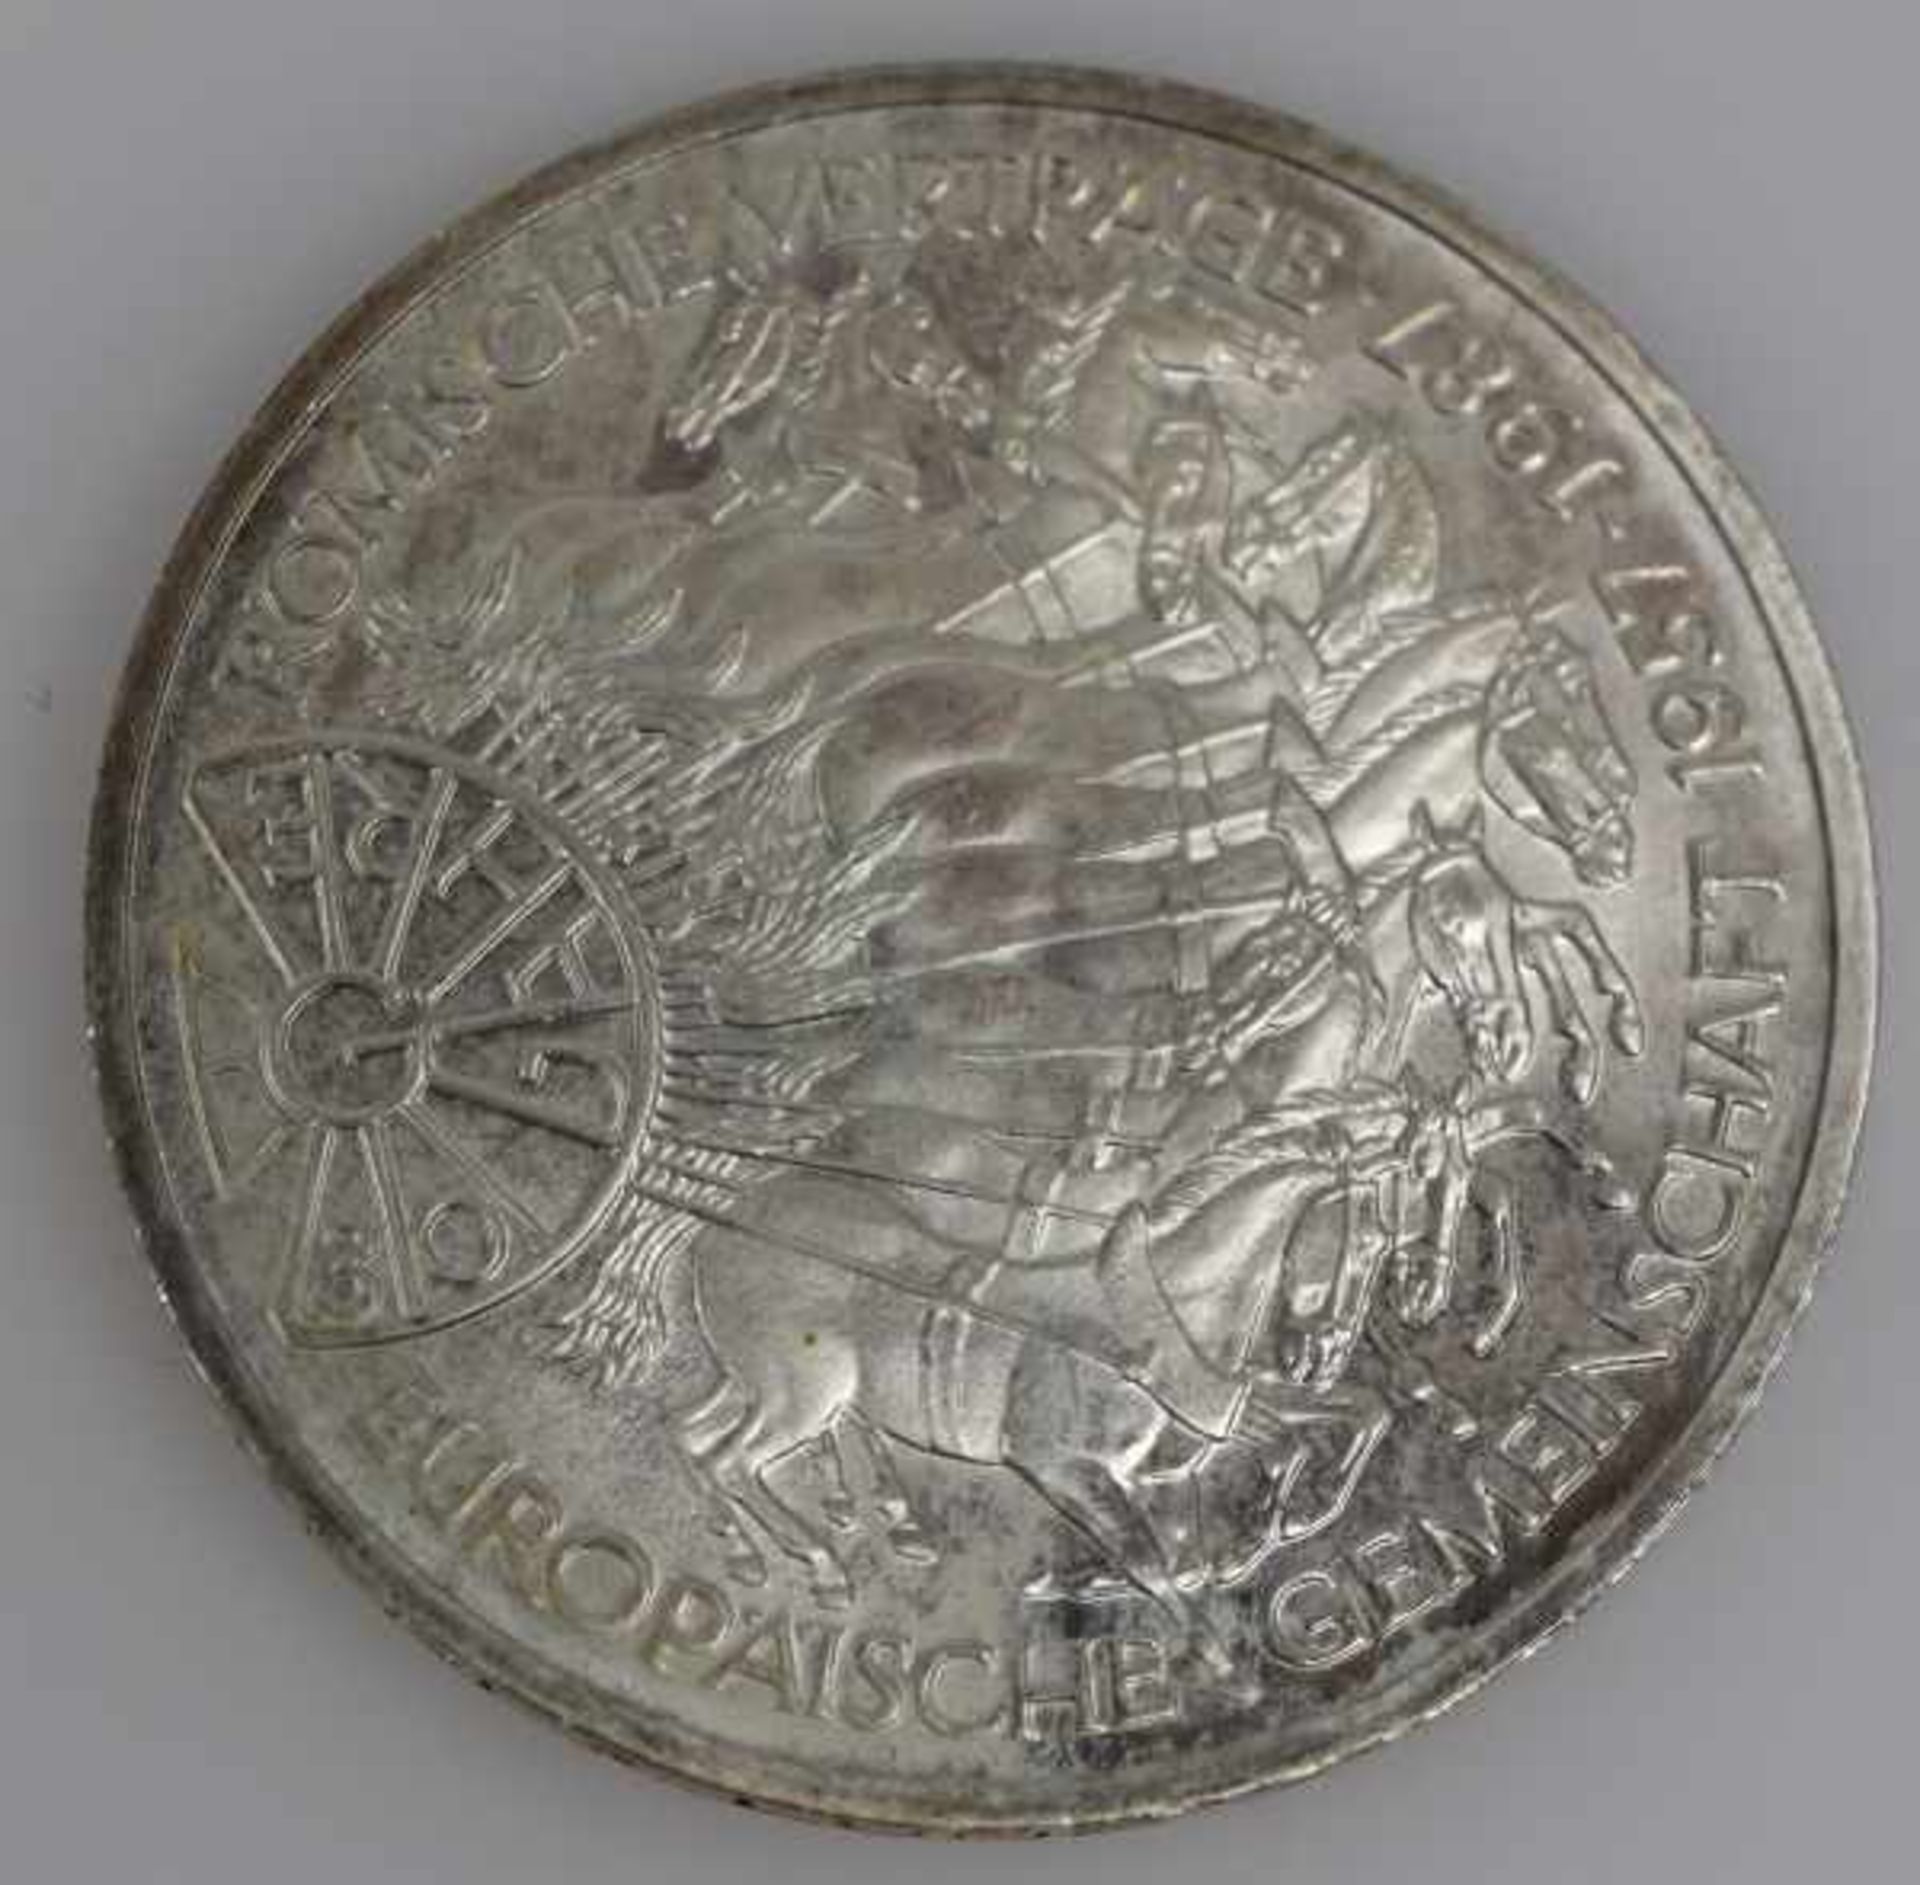 MÜNZEN-LOT 1 Münzanhänger mit Münze 10Fr. Schweiz Nachprägung in Fassung 14ct, 8,3g -1 Goldmünze 200 - Bild 6 aus 17